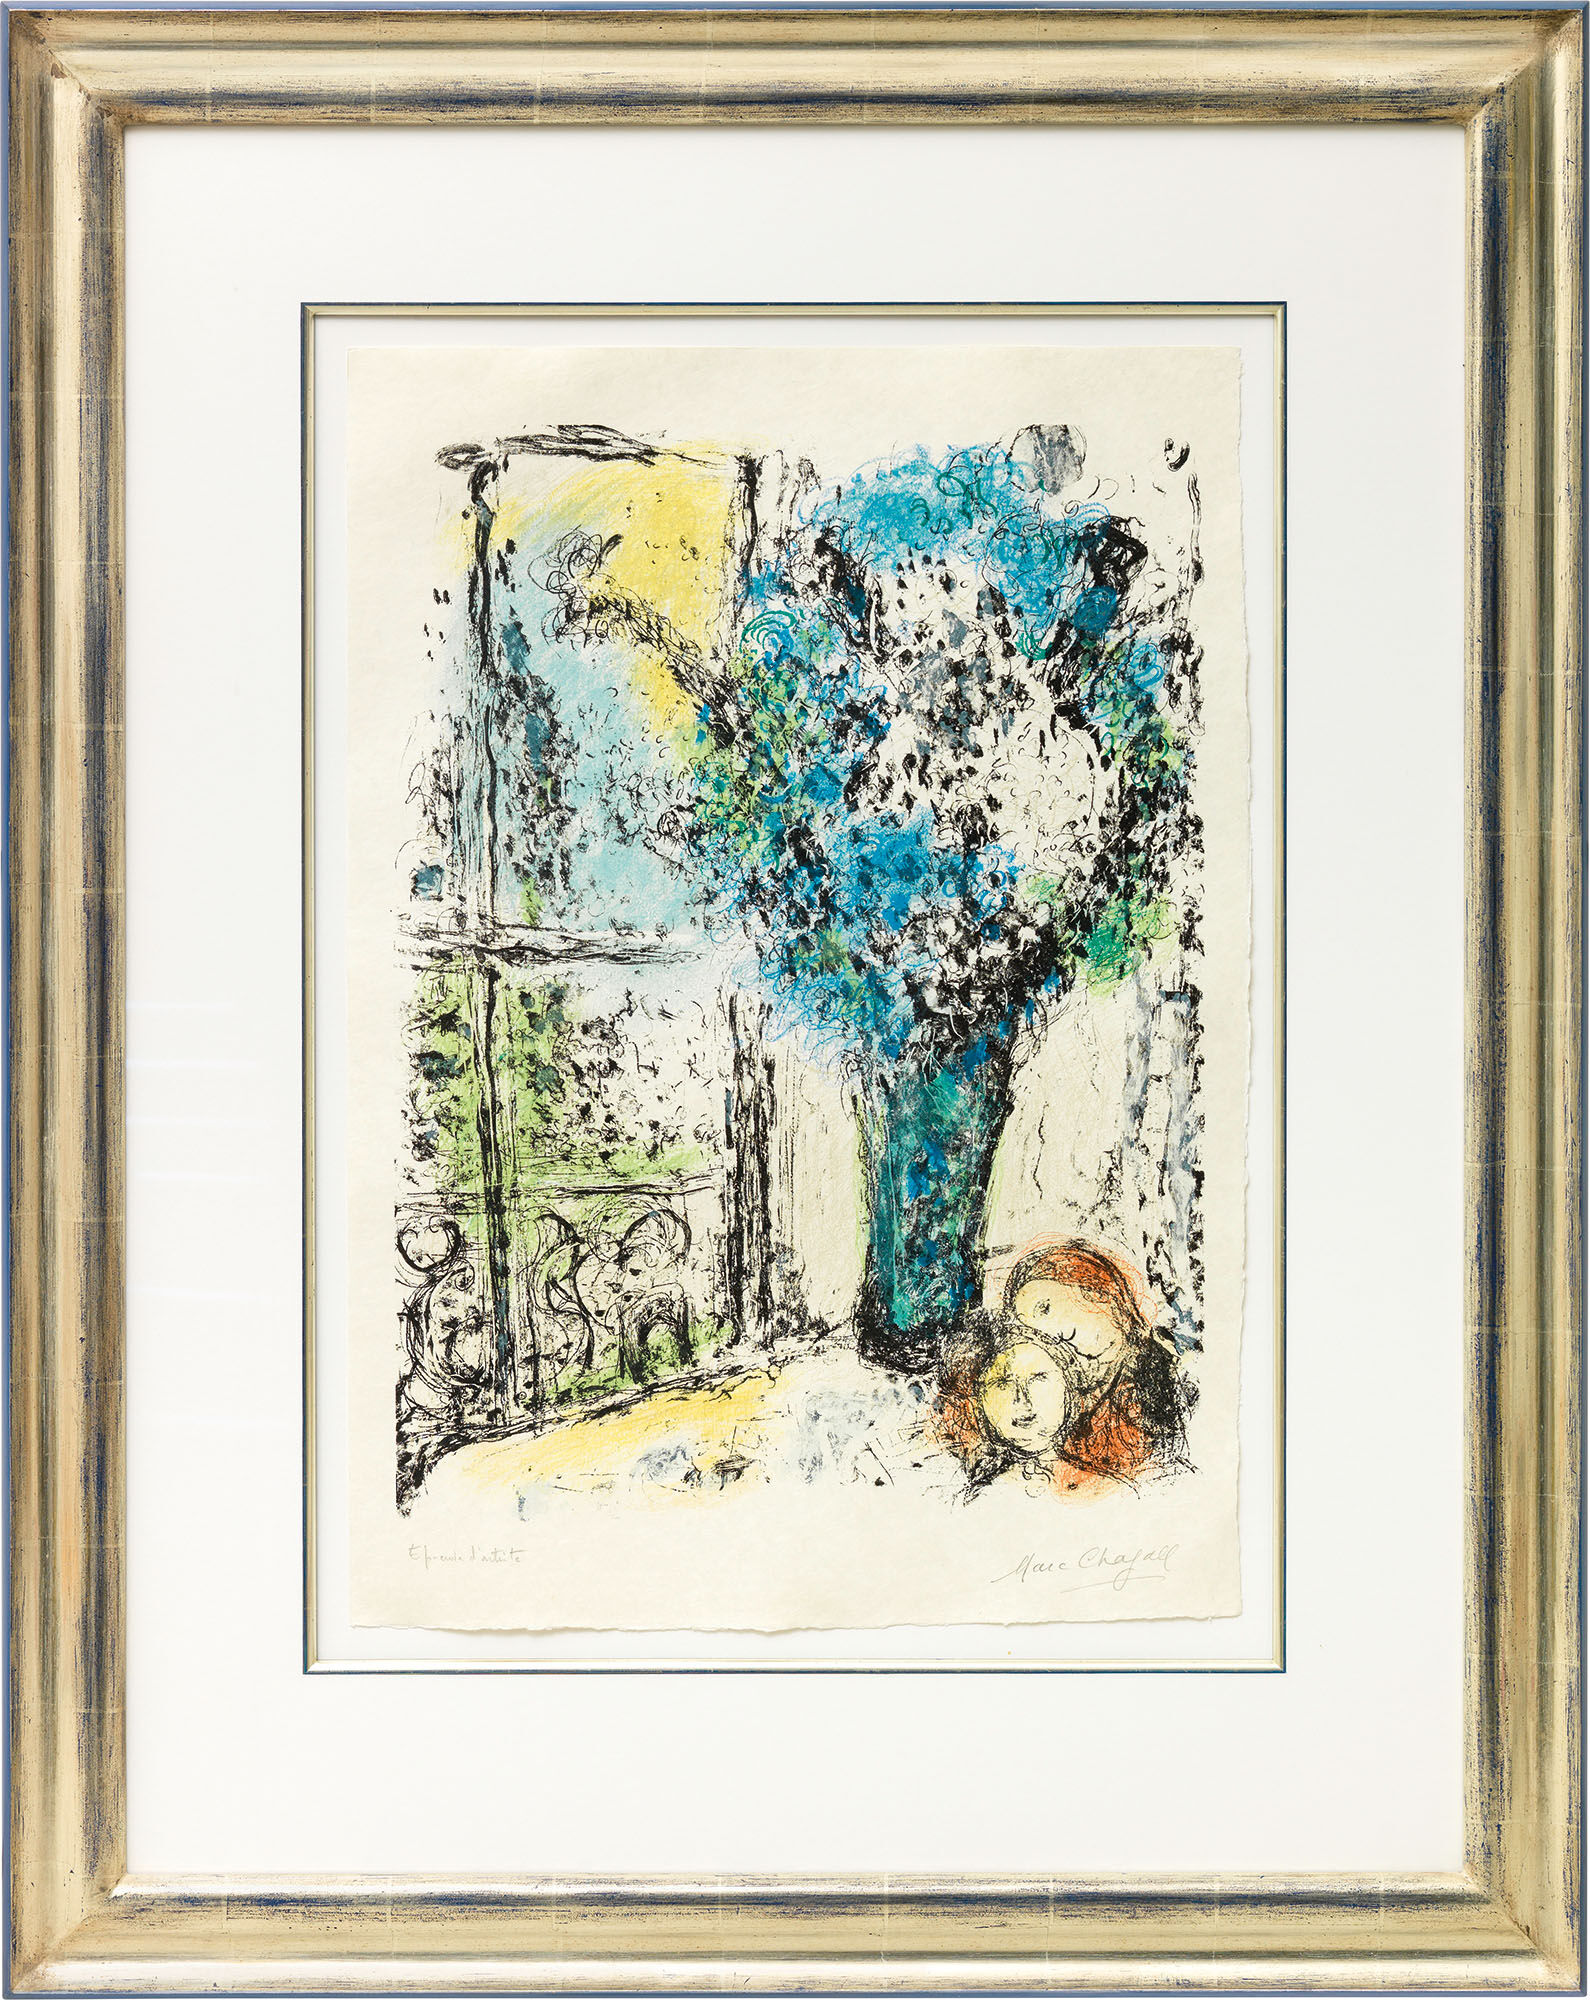 Beeld "Le Bouquet bleu" (1974) von Marc Chagall